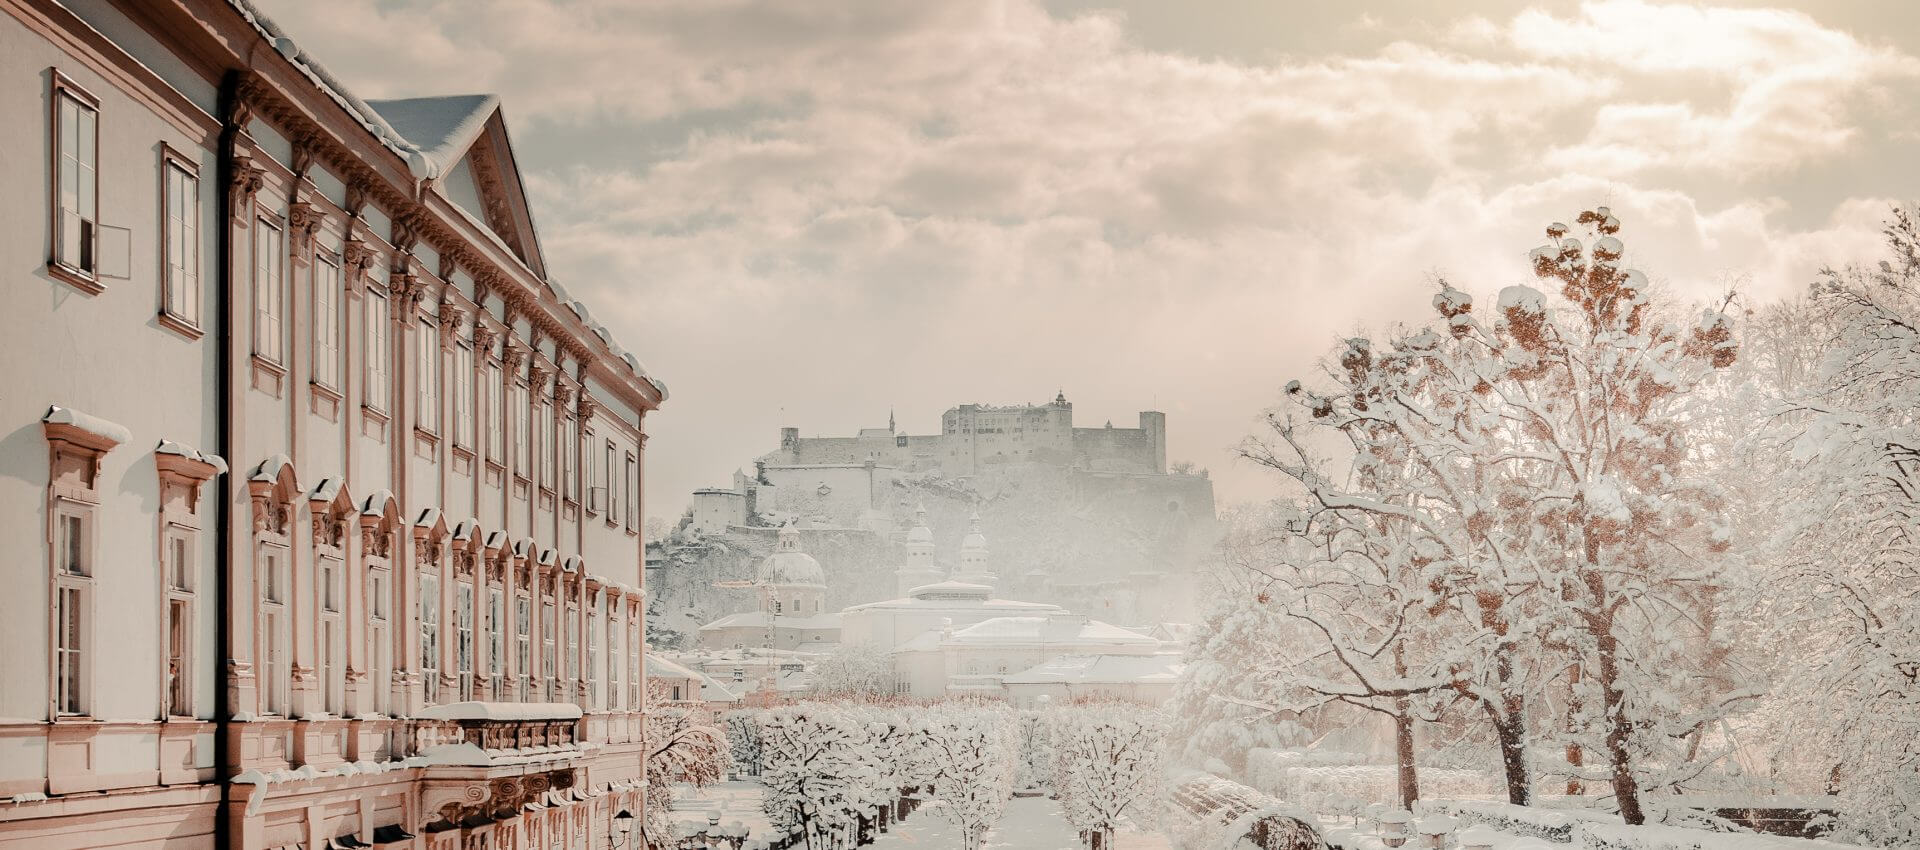 Salzburg im Winter, (c) SLTG, PATRICK LANGWALLNER